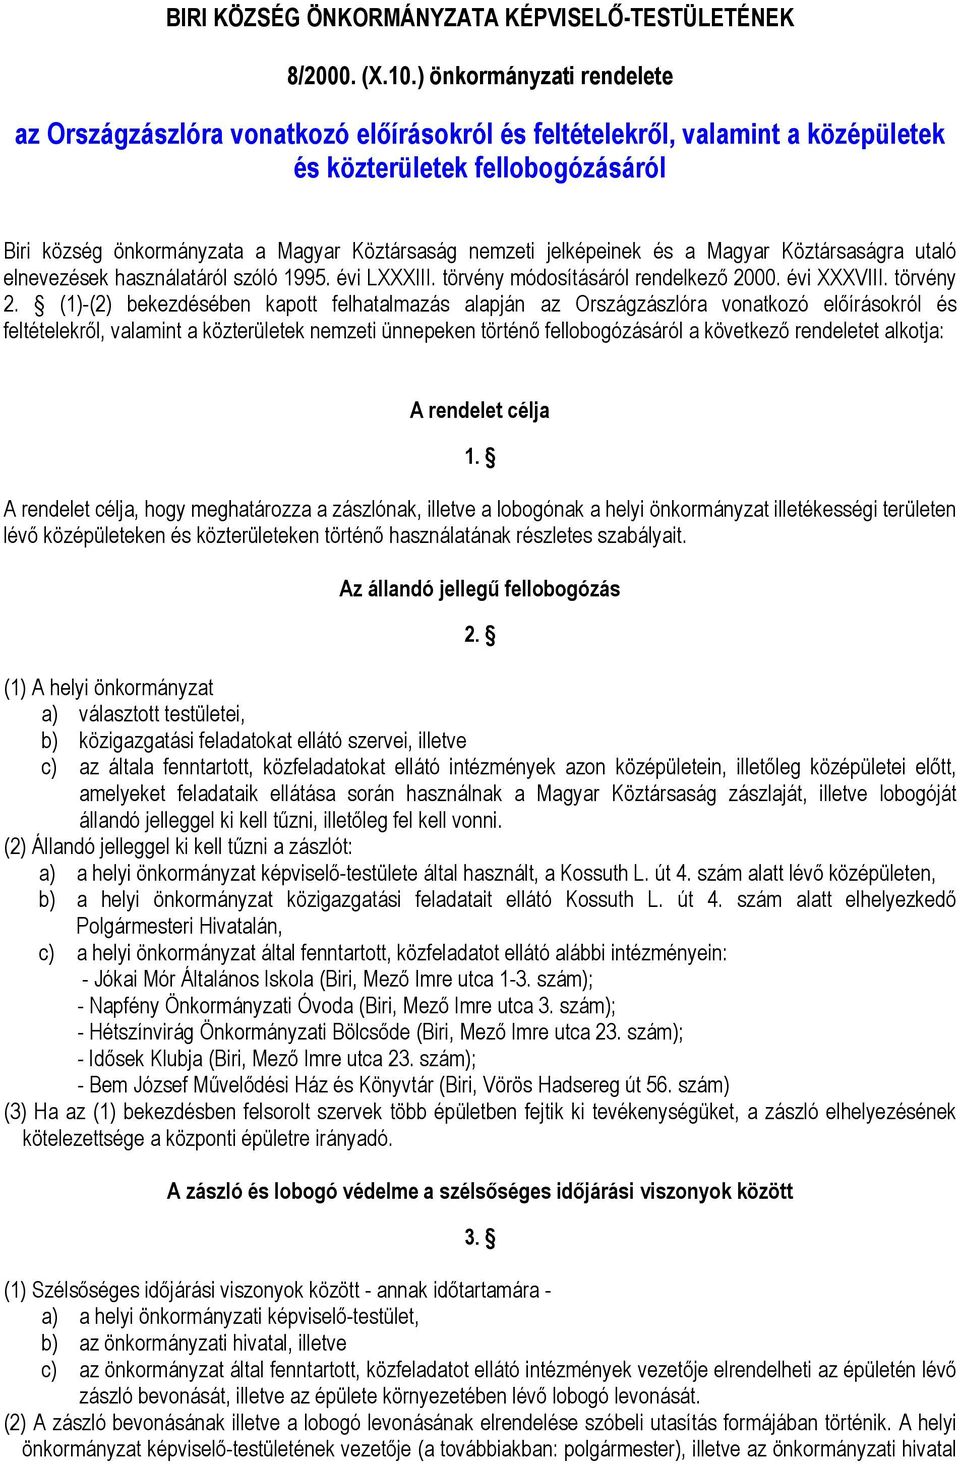 jelképeinek és a Magyar Köztársaságra utaló elnevezések használatáról szóló 1995. évi LXXXIII. törvény módosításáról rendelkező 2000. évi XXXVIII. törvény 2.